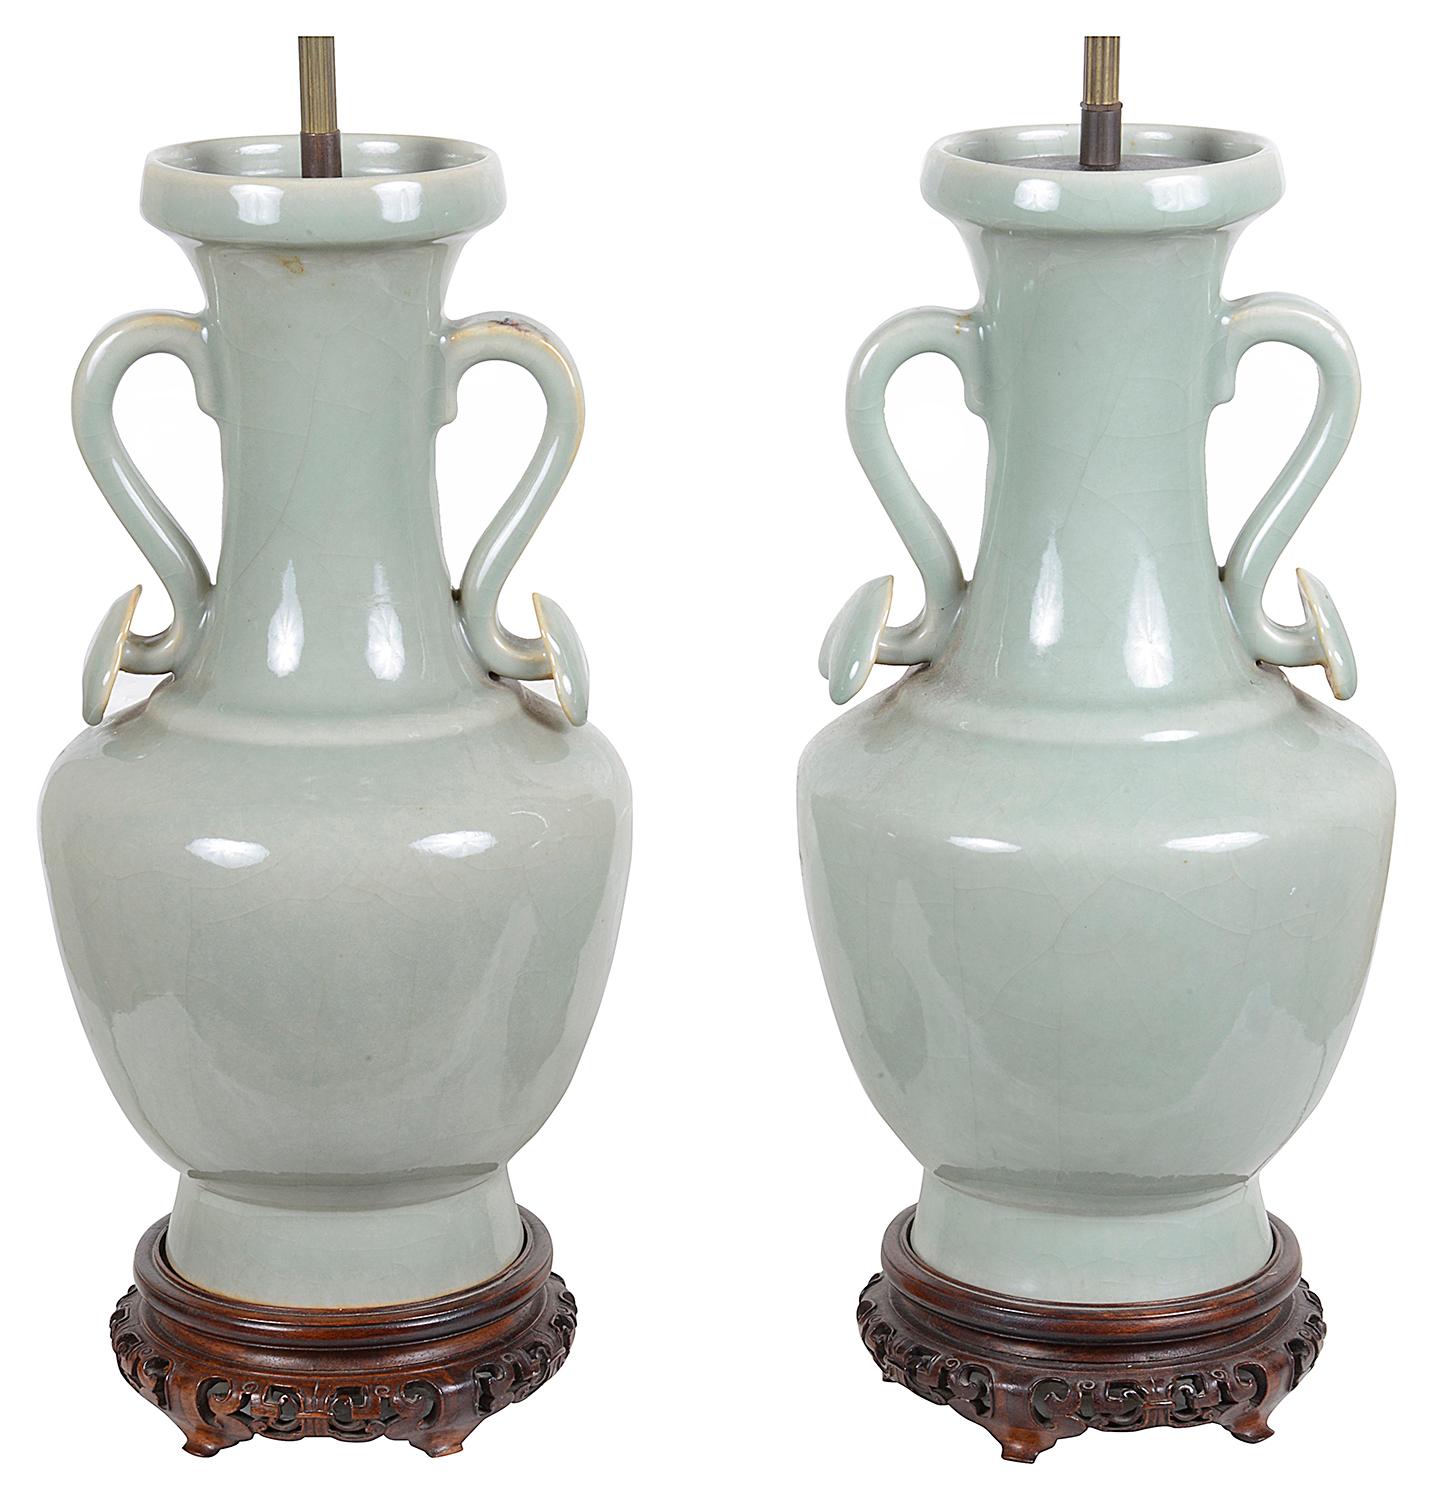 Paire très décorative de vases/lampes à deux anses en porcelaine céladon de Chine, style XVIIIe siècle, montés sur des pieds en bois dur sculpté et percé, vers 1920.